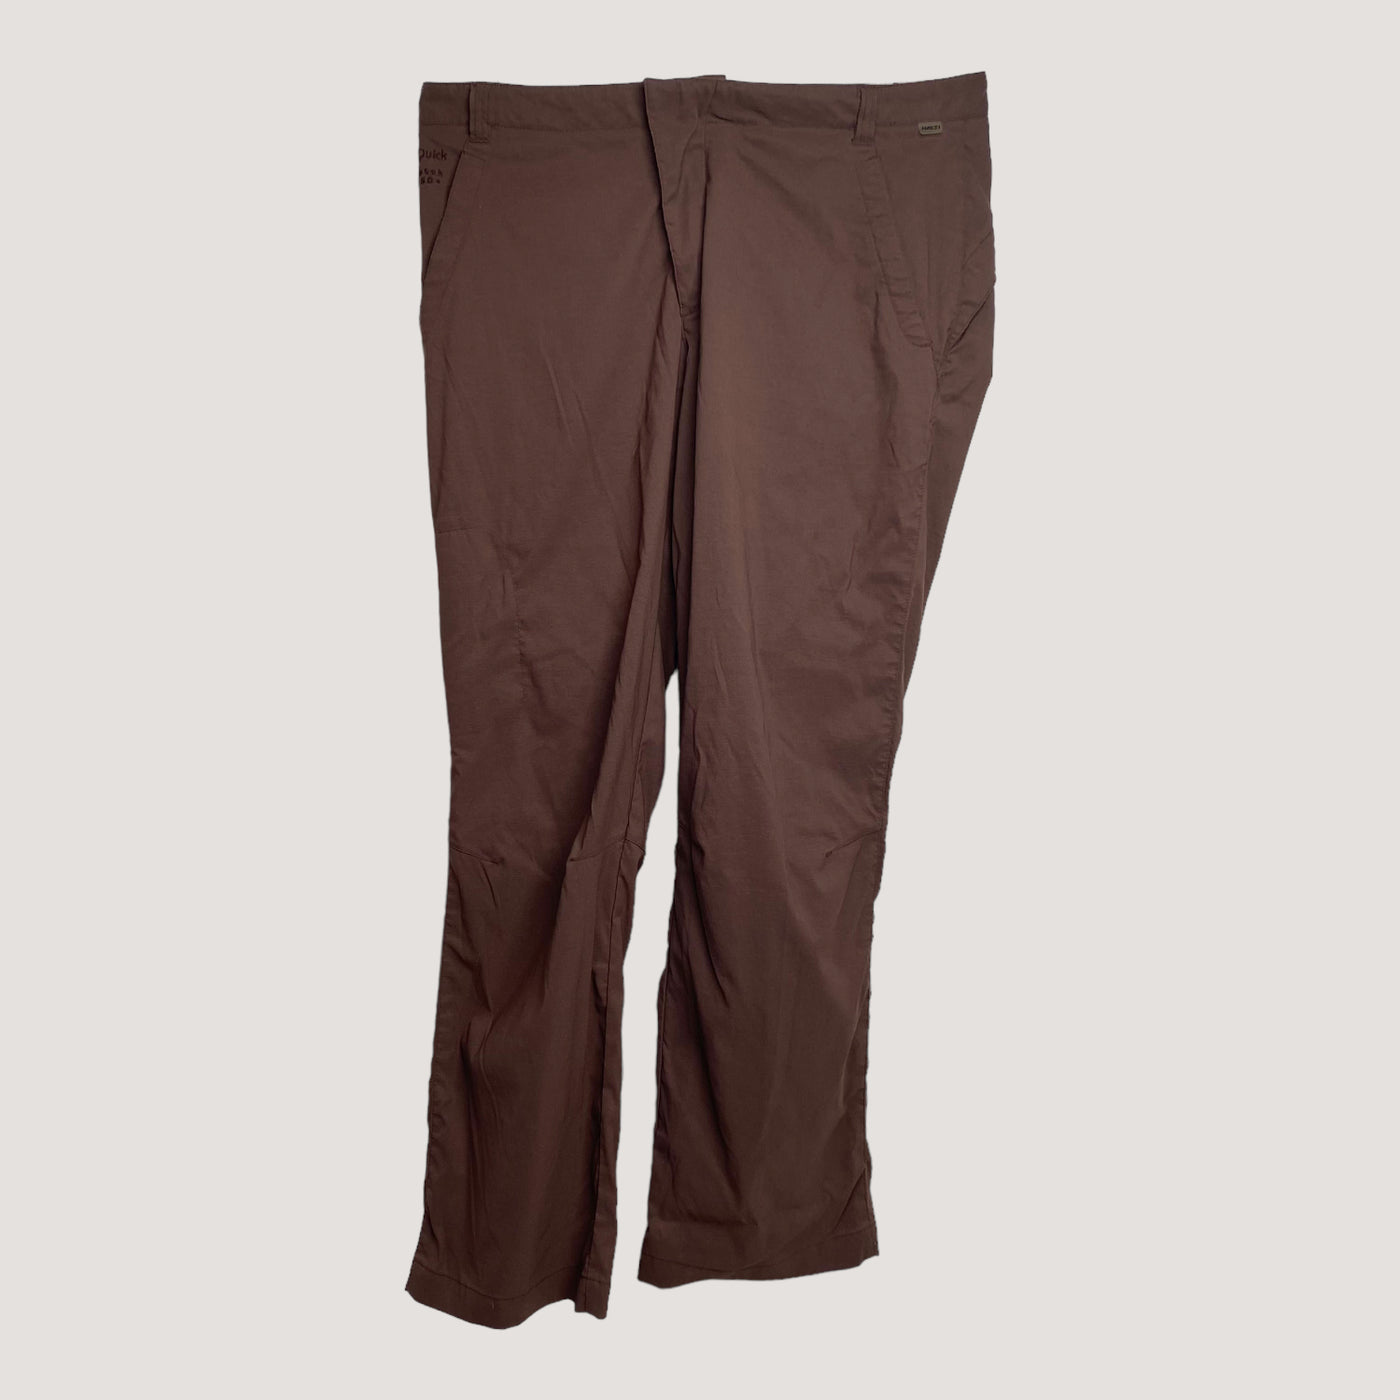 Halti midseason stretch pants, brown sugar | woman 44